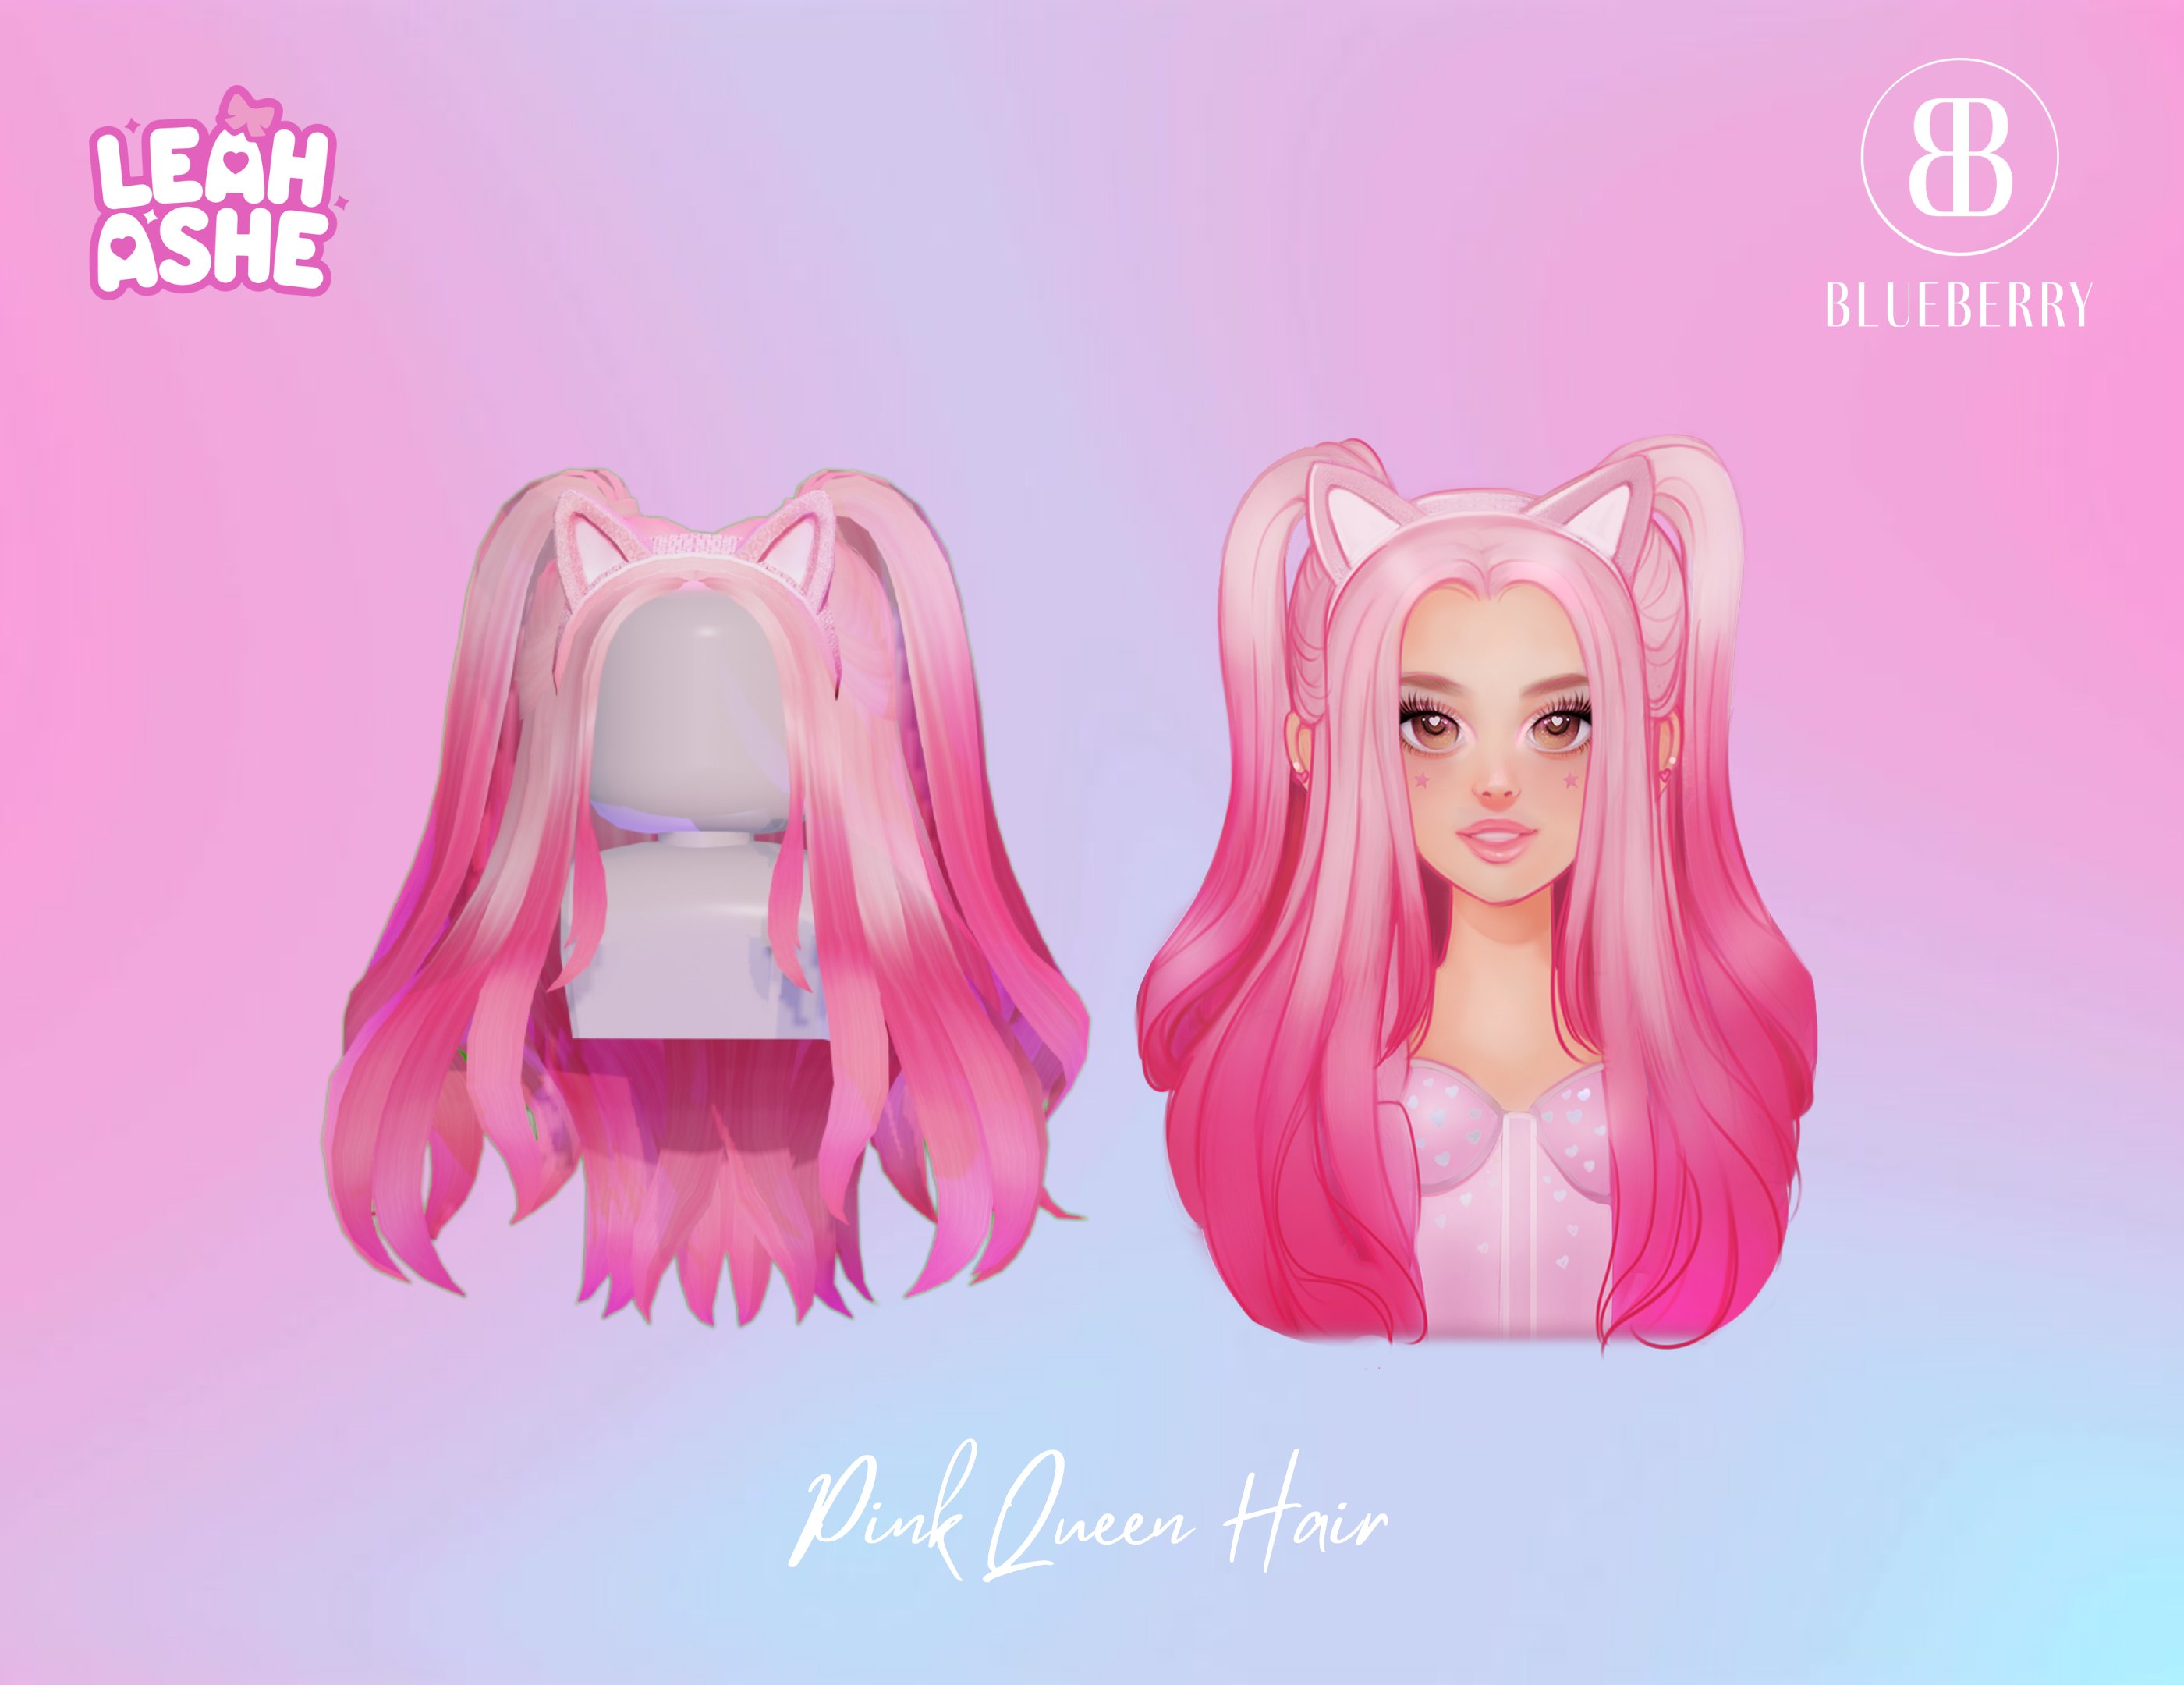 Khám phá thế giới màu hồng tuyệt đẹp với Pink Queen Hair. Hình ảnh sẽ đưa bạn vào trải nghiệm cảm giác được làm nữ hoàng và sở hữu một mái tóc đầy quyến rũ.